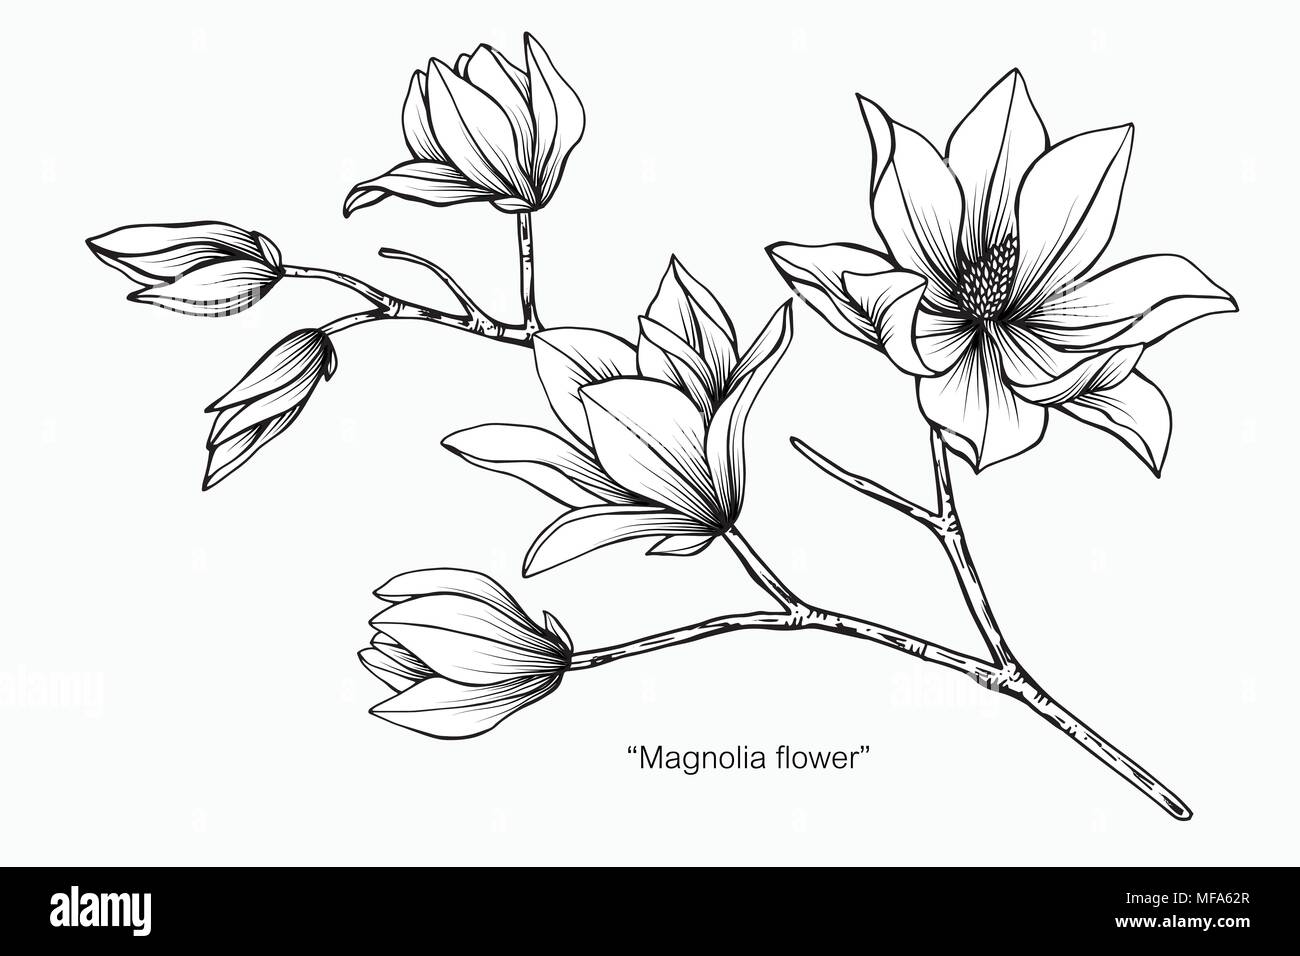 Illustration Dessin Fleur De Magnolia Noir Et Blanc Avec Dessin Au Trait Sur Fonds Blancs Image Vectorielle Stock Alamy